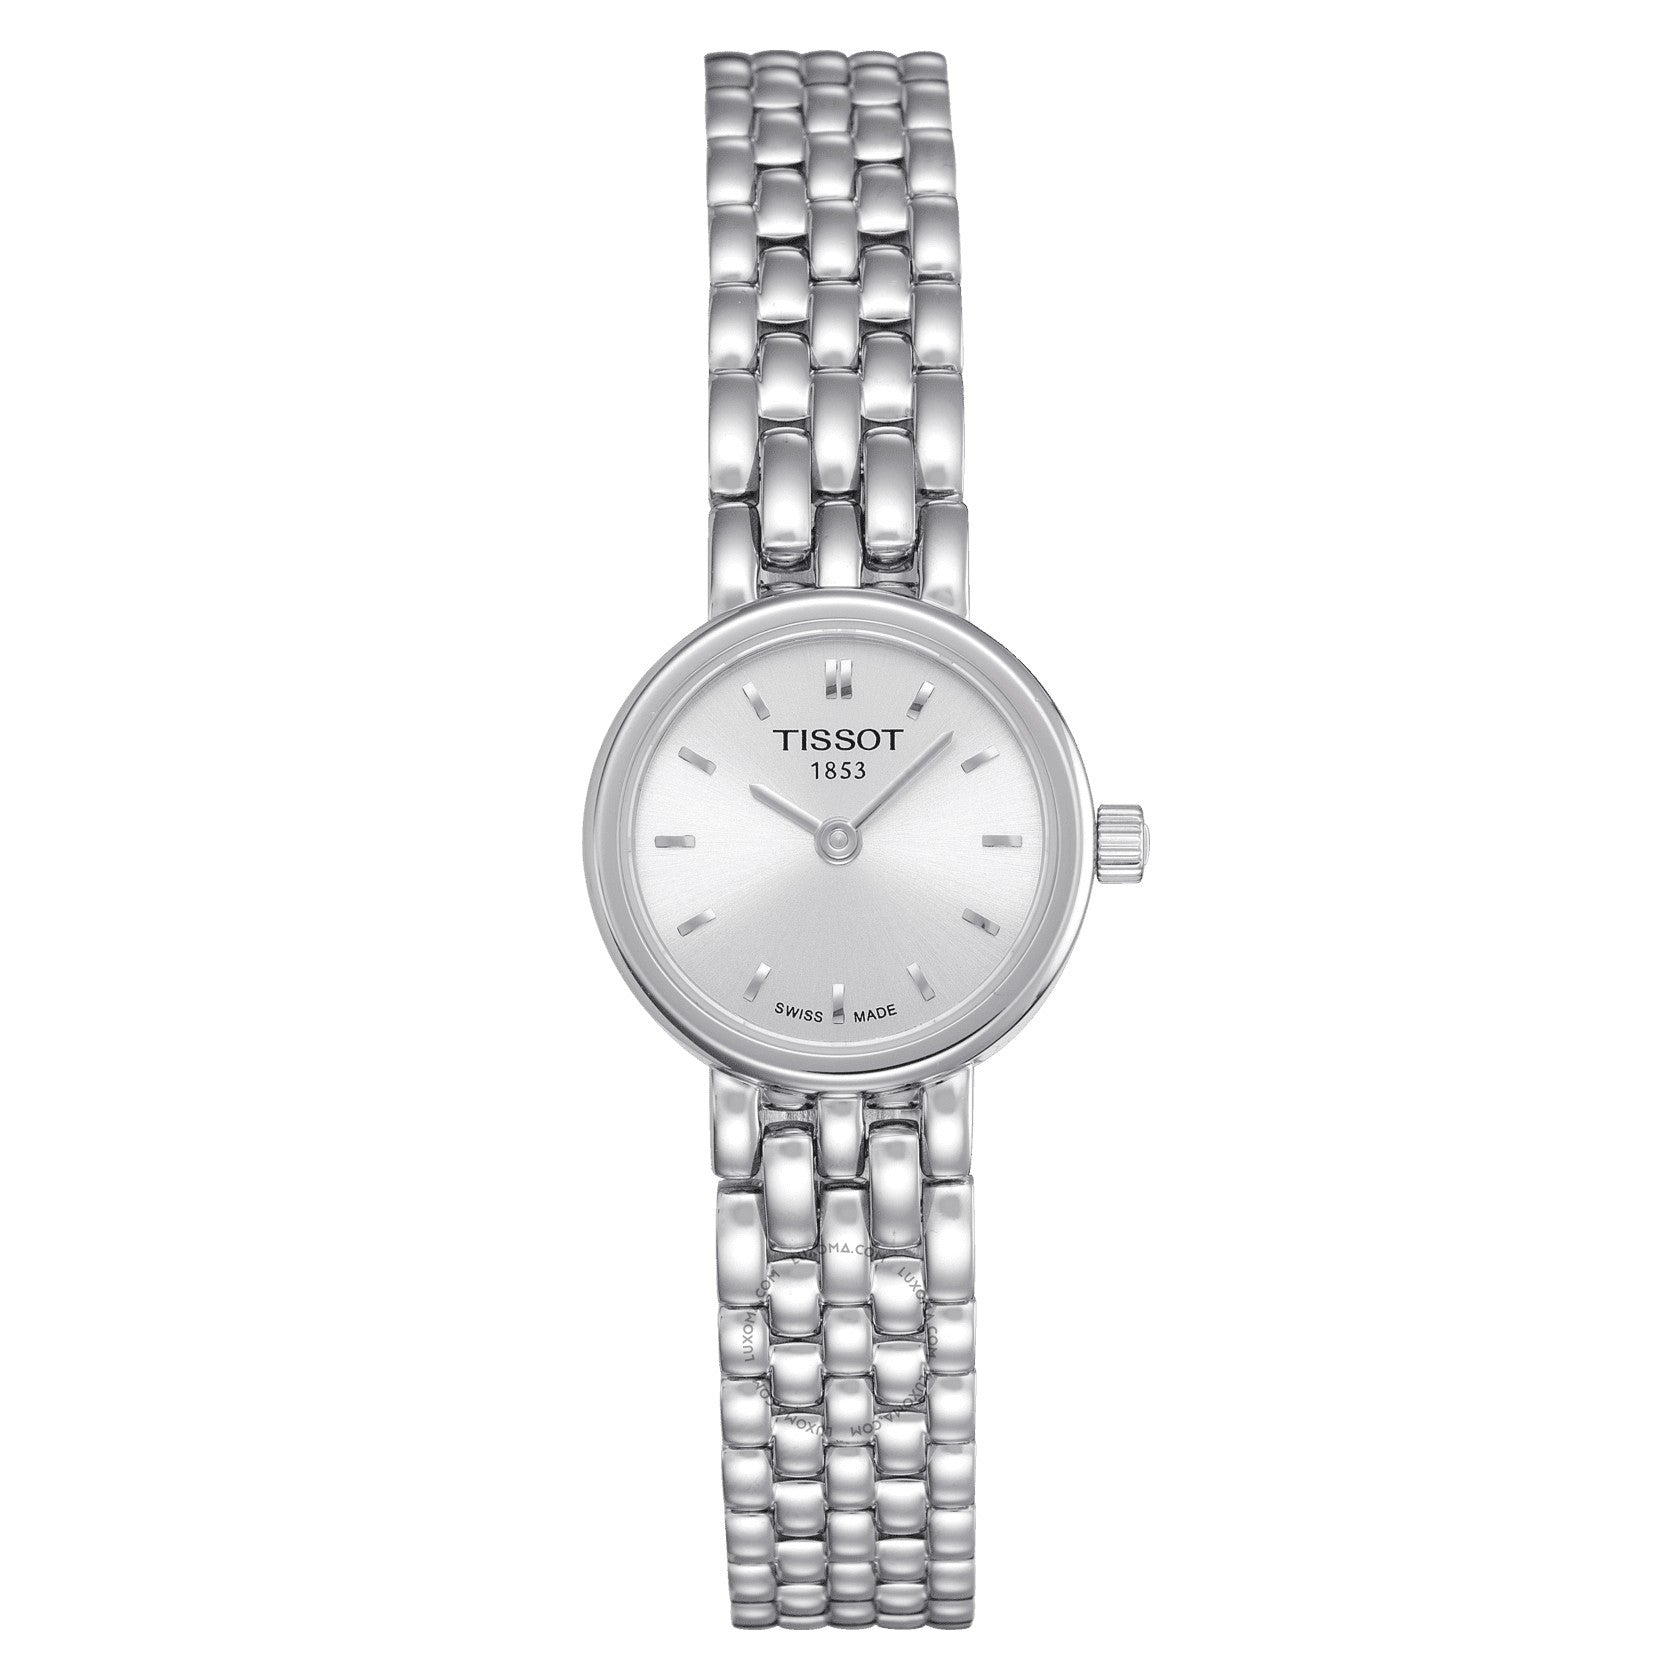 Tissot T-Trend Collection Quartz Silver Dial Ladies Watch T058.009.11.031.00